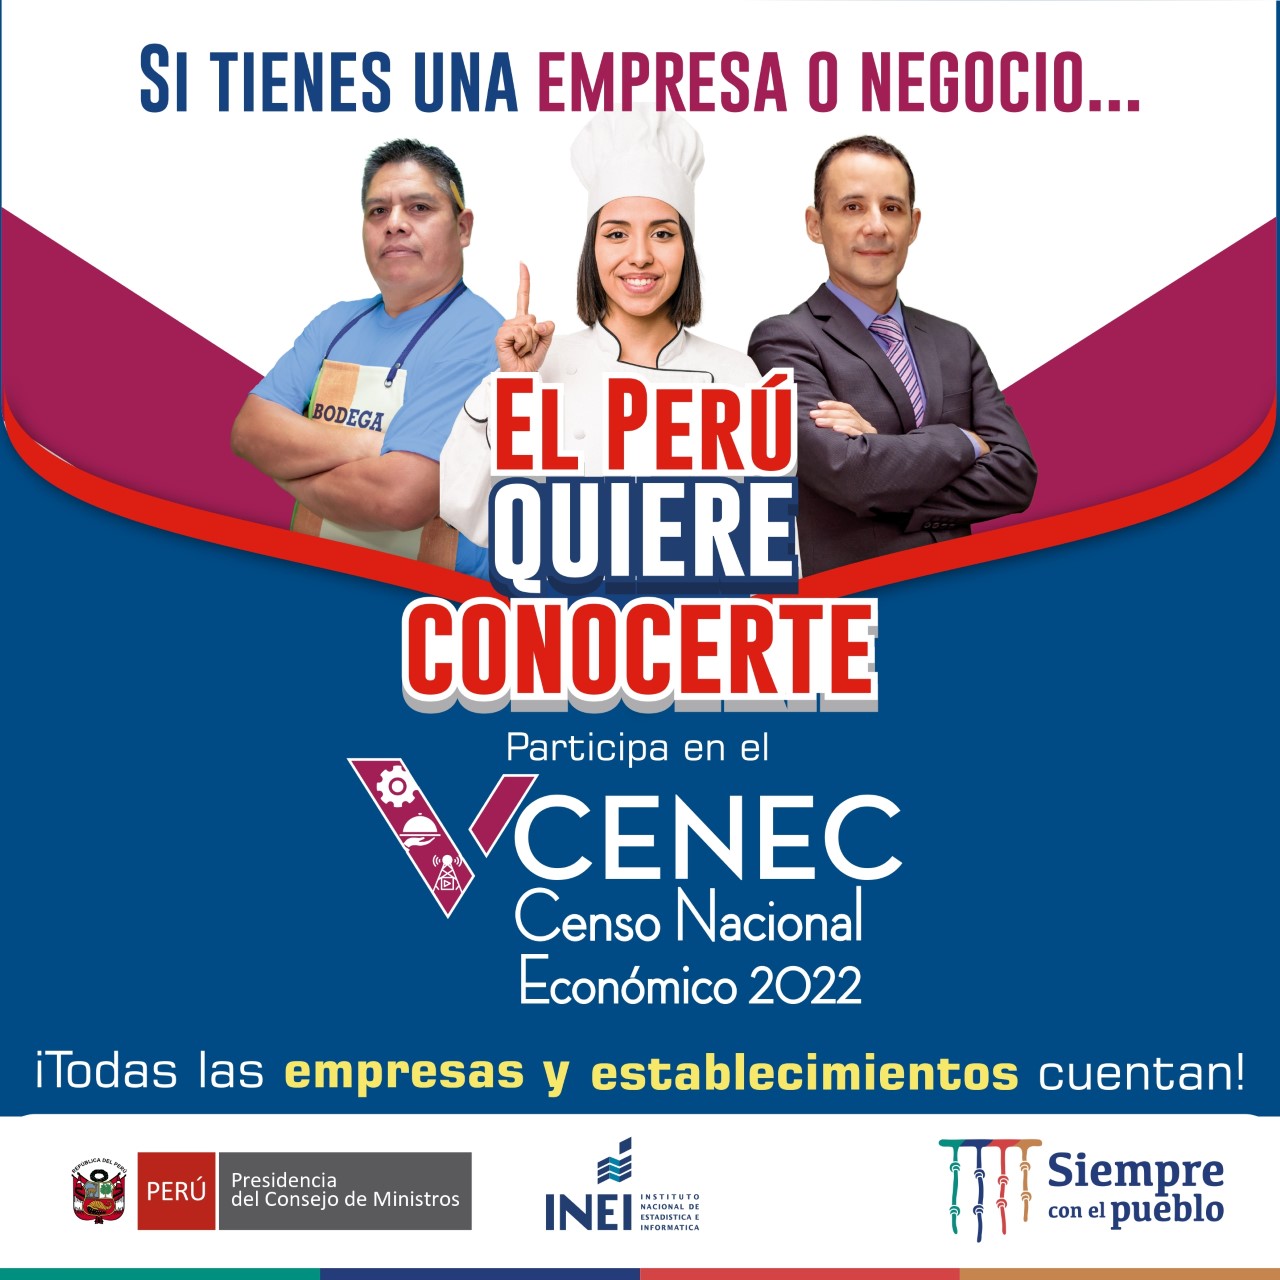  														V CENEC - Censo Nacional Económico 2022
														